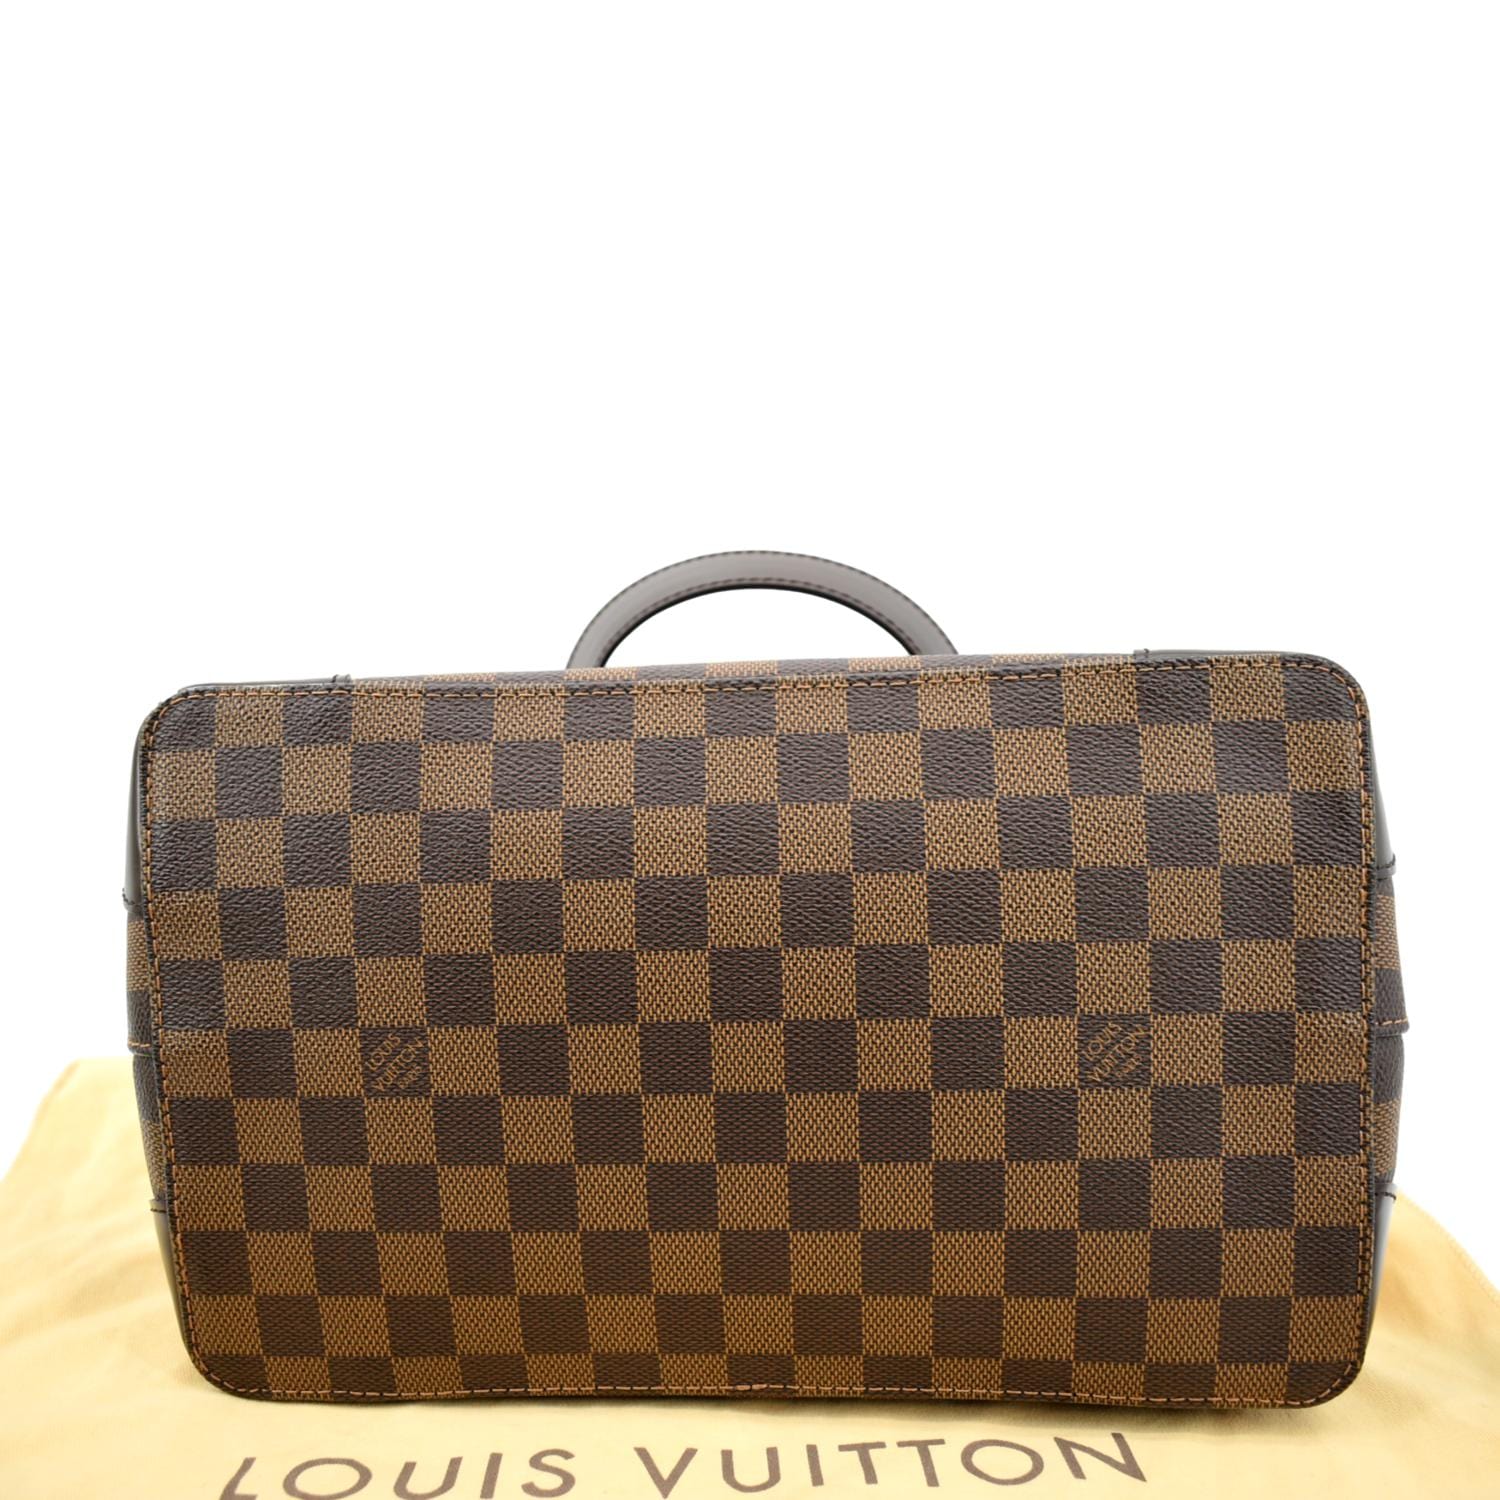 Louis Vuitton Damier Ebene Canvas Hampstead PM Bag